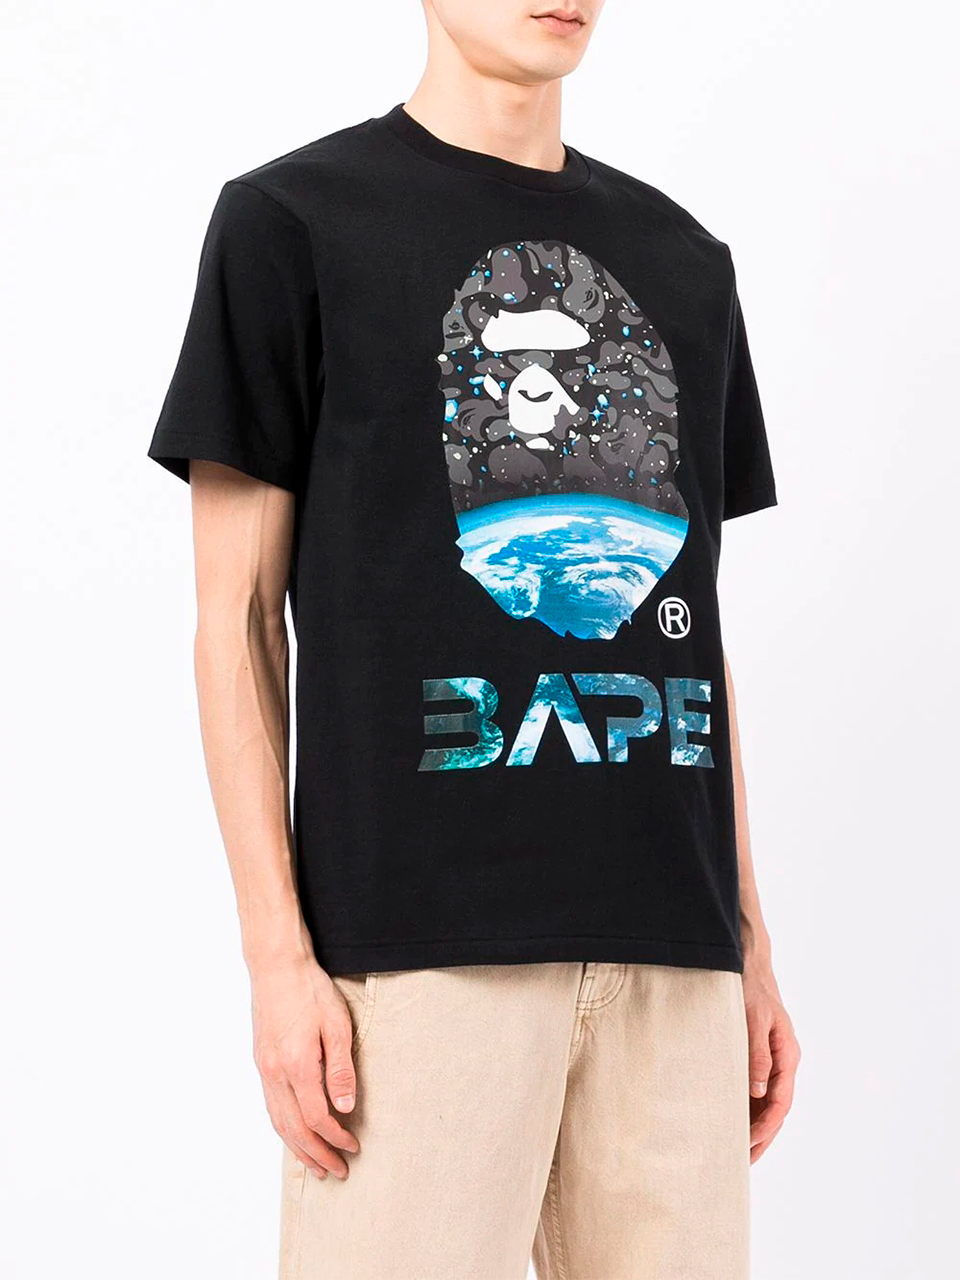 Imagem de: Camiseta BAPE Space Camo Preta